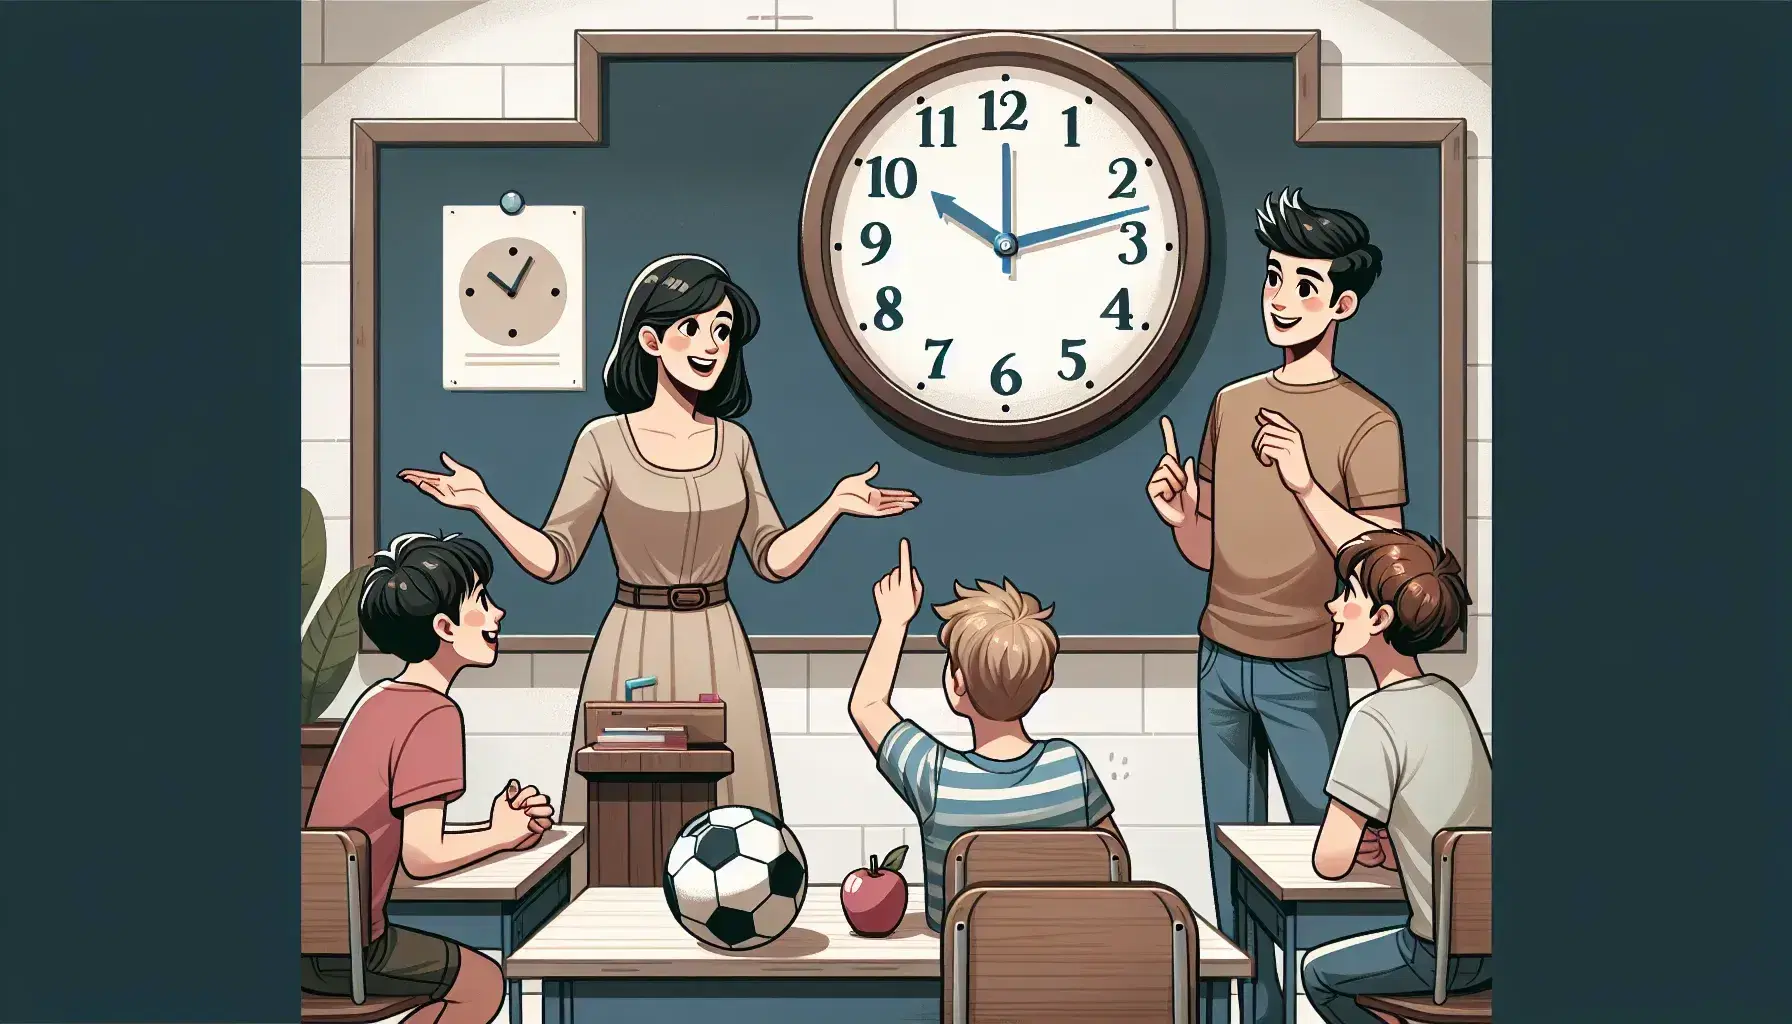 Insegnante spiega a tre studenti attenti in aula, sotto orologio senza numeri; sul banco mela, cubo di legno e pallone.